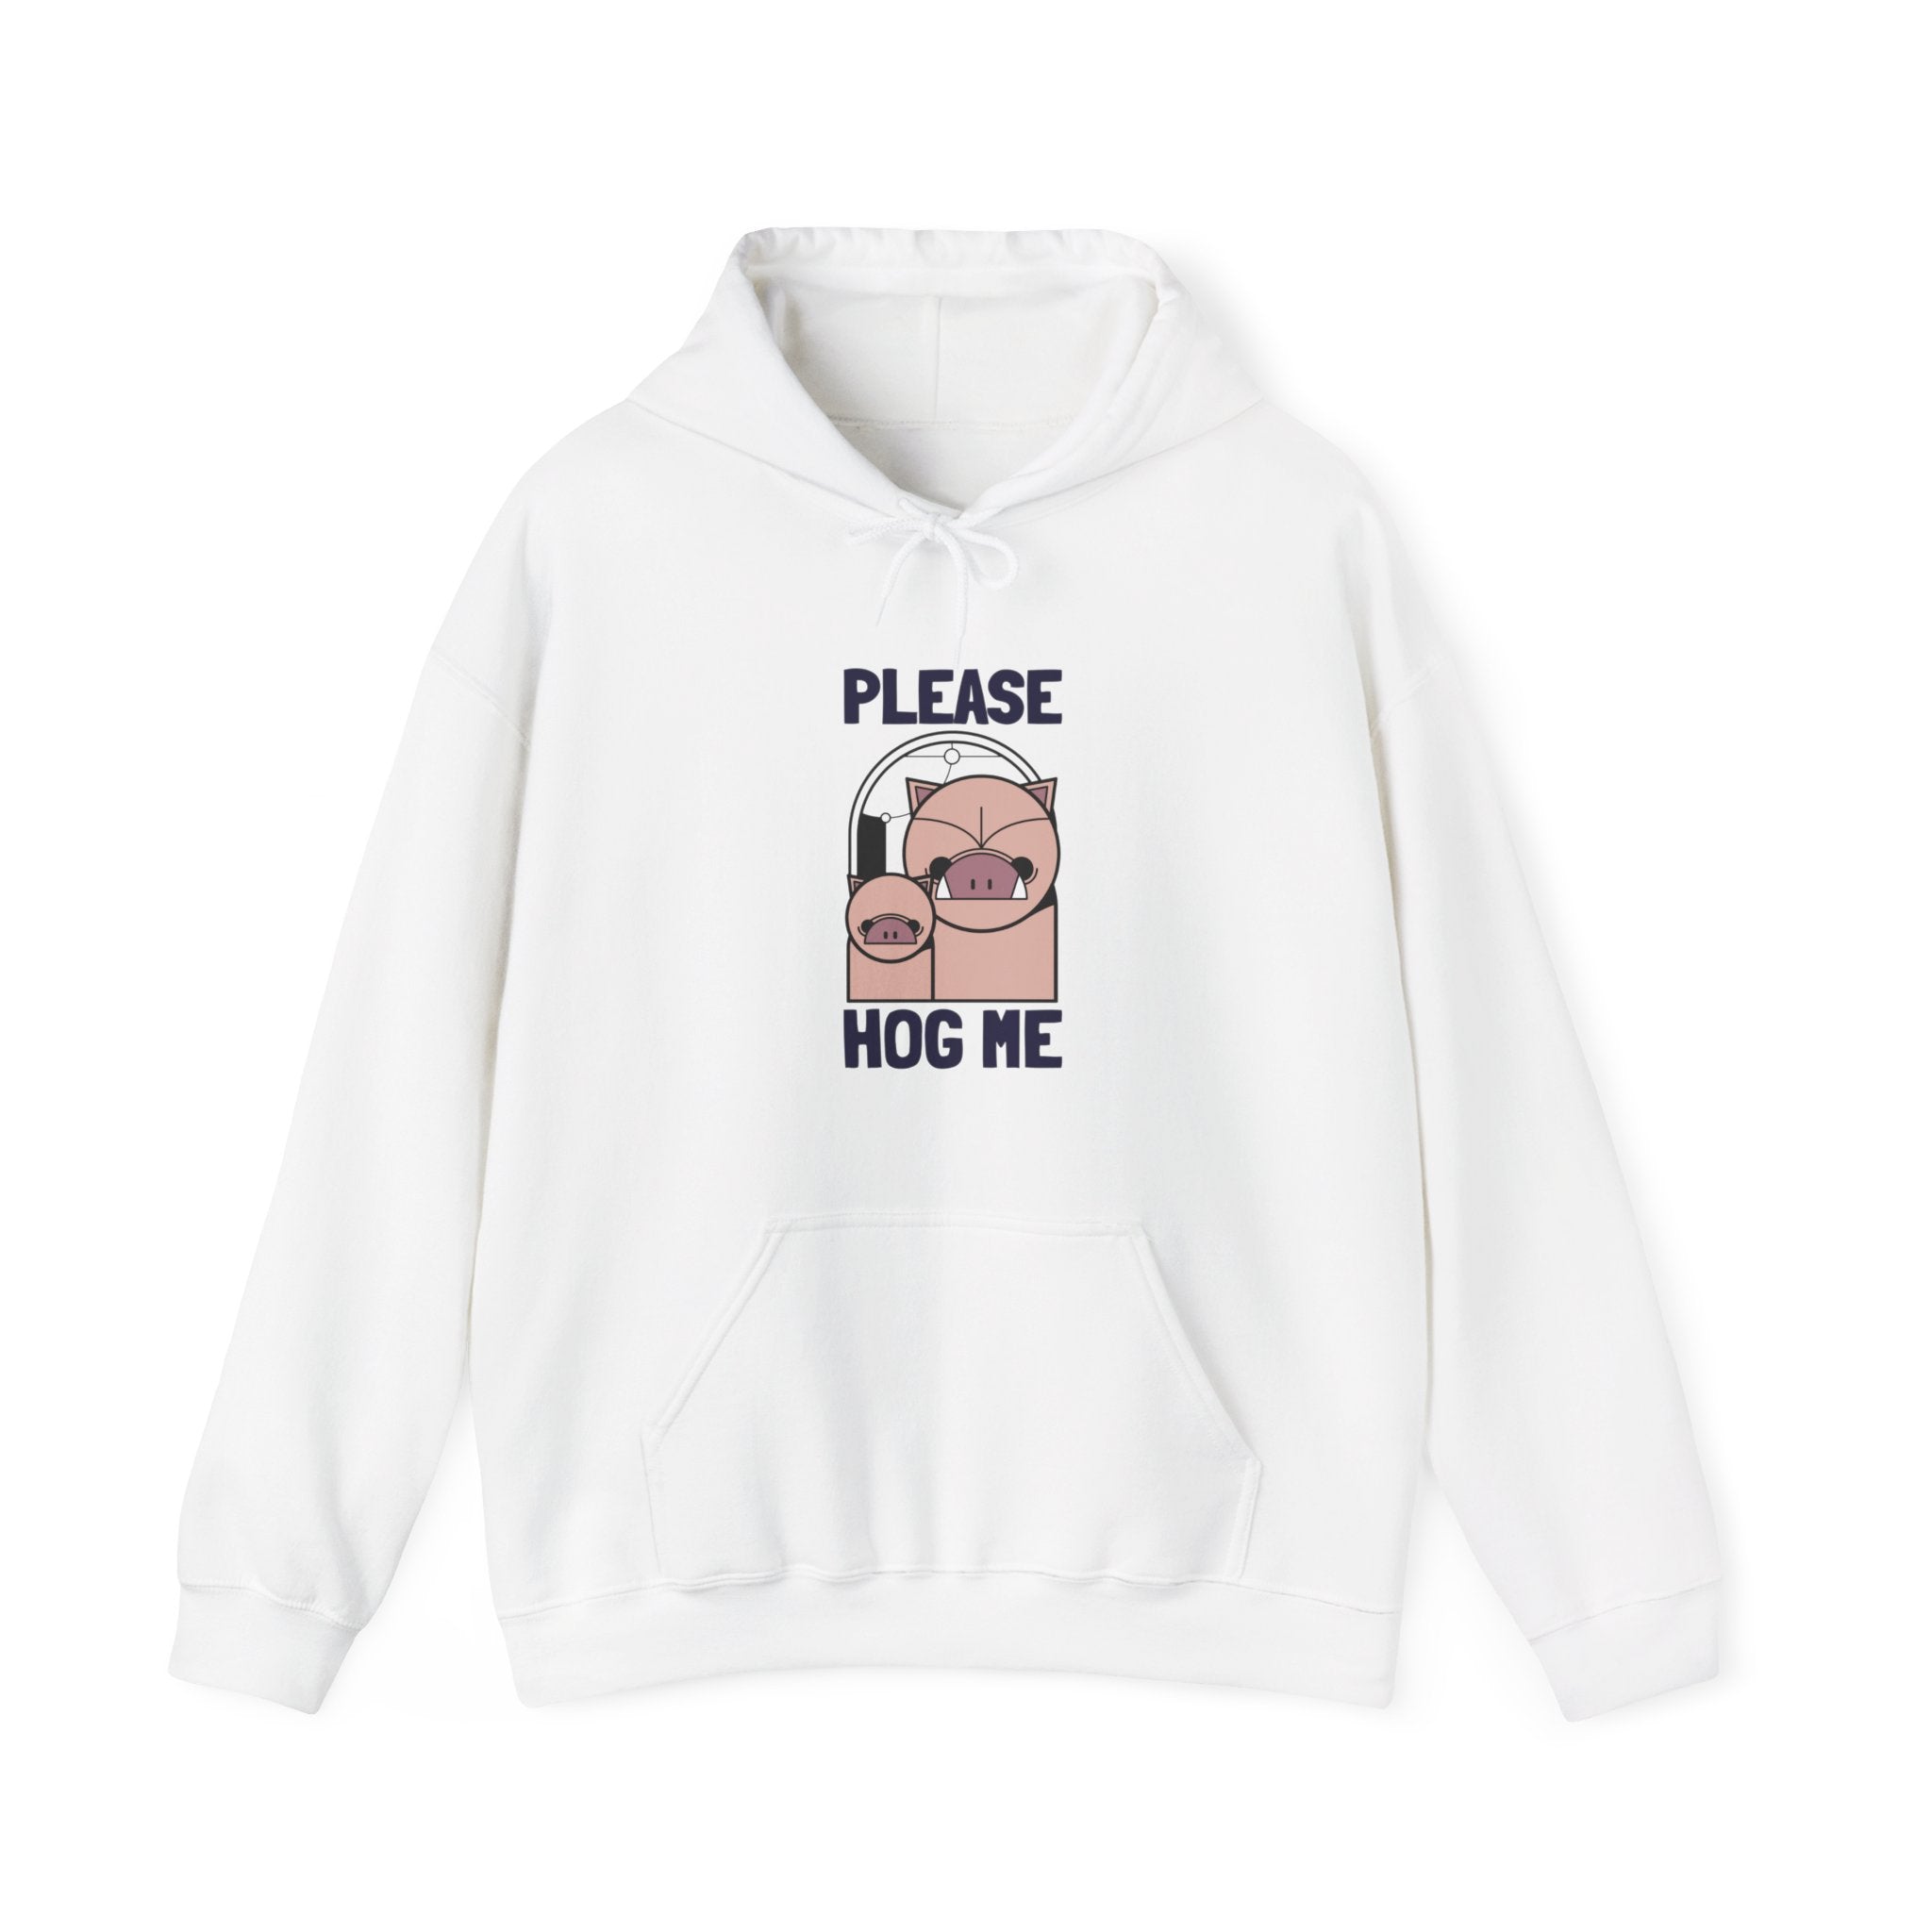 Please Hog Me - Hooded Sweatshirt